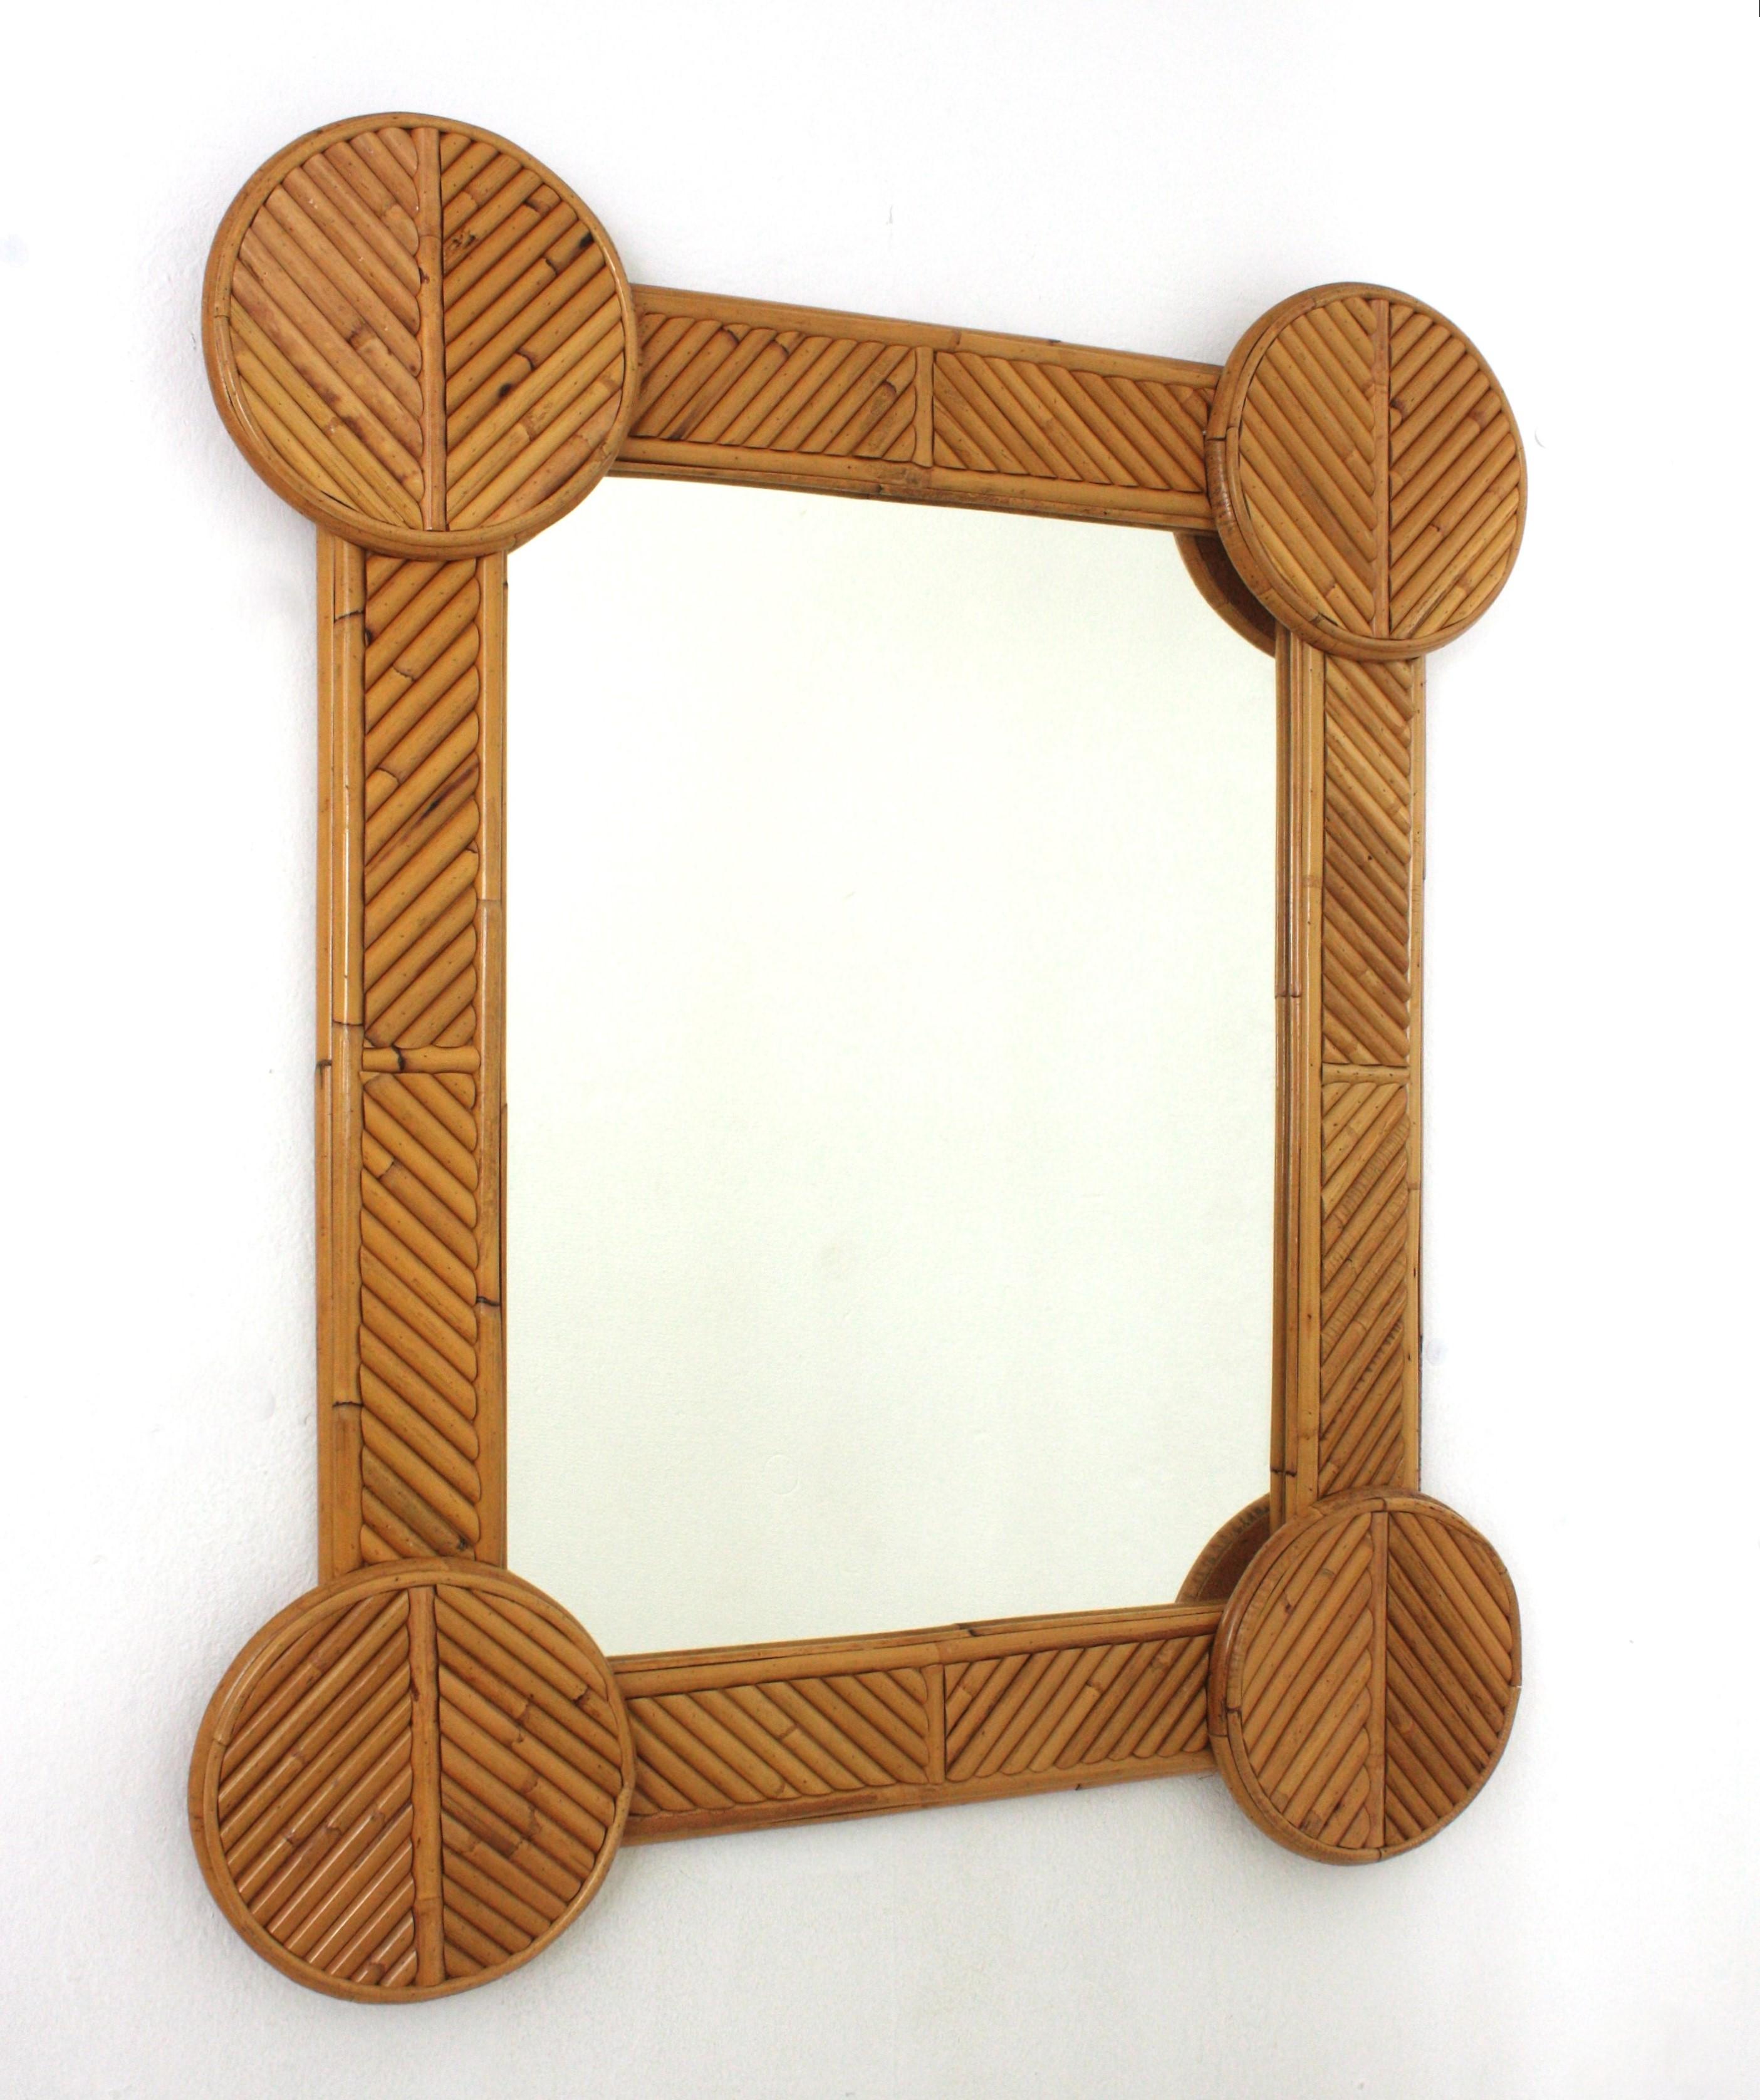 Spiegel aus gespaltenem Rattan mit kreisförmig verzierten Ecken. Wird der Vivai del Sud zugeschrieben. Italien, 1960er Jahre.
Sein Design kombiniert Midcentury und tropische Akzente.
Es wird eine nette Ergänzung in einem Badezimmer oder als